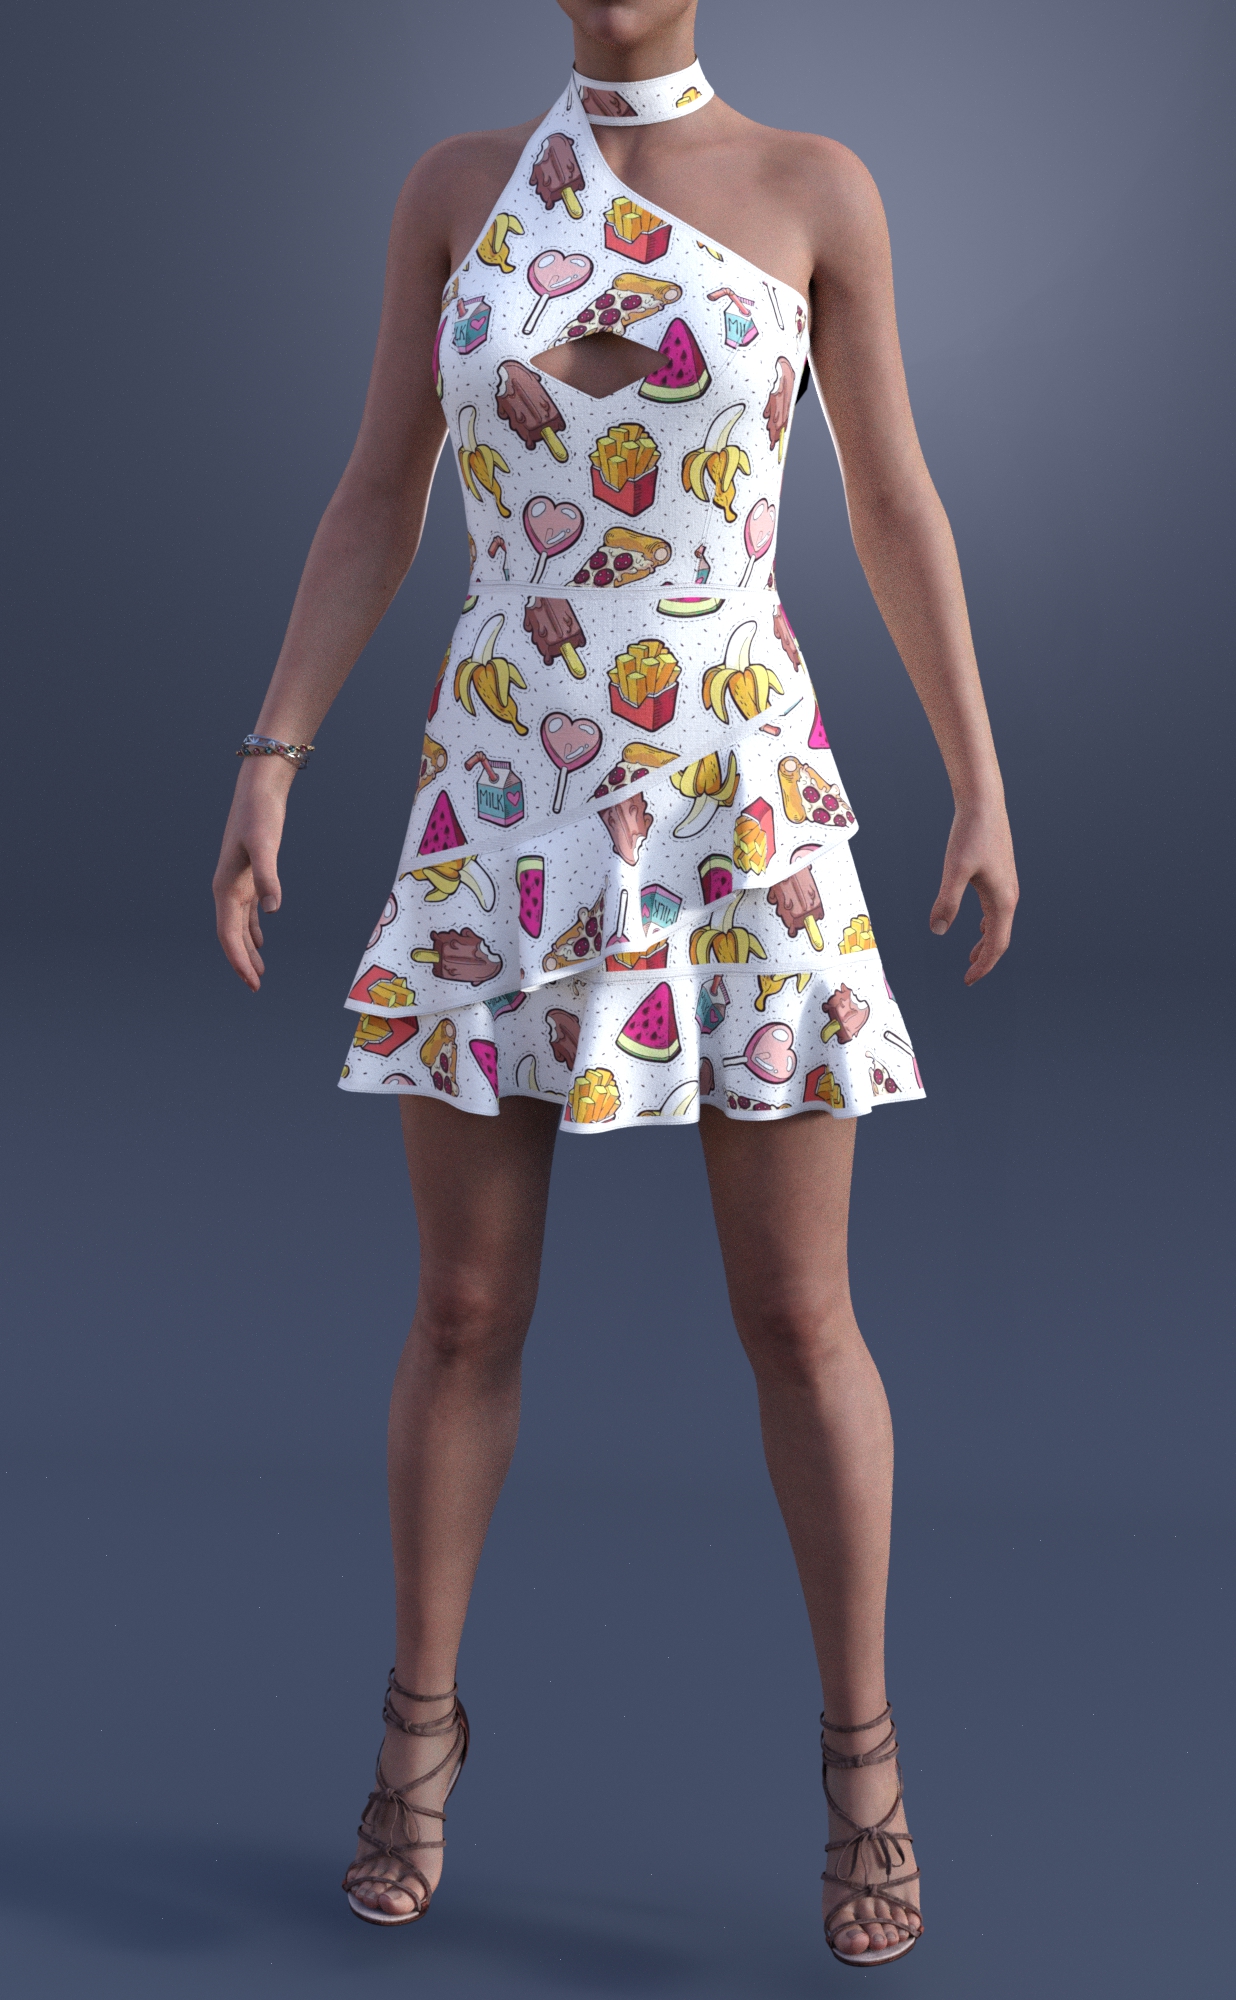 dForce Mollie Candy Dress Textures | Daz 3D